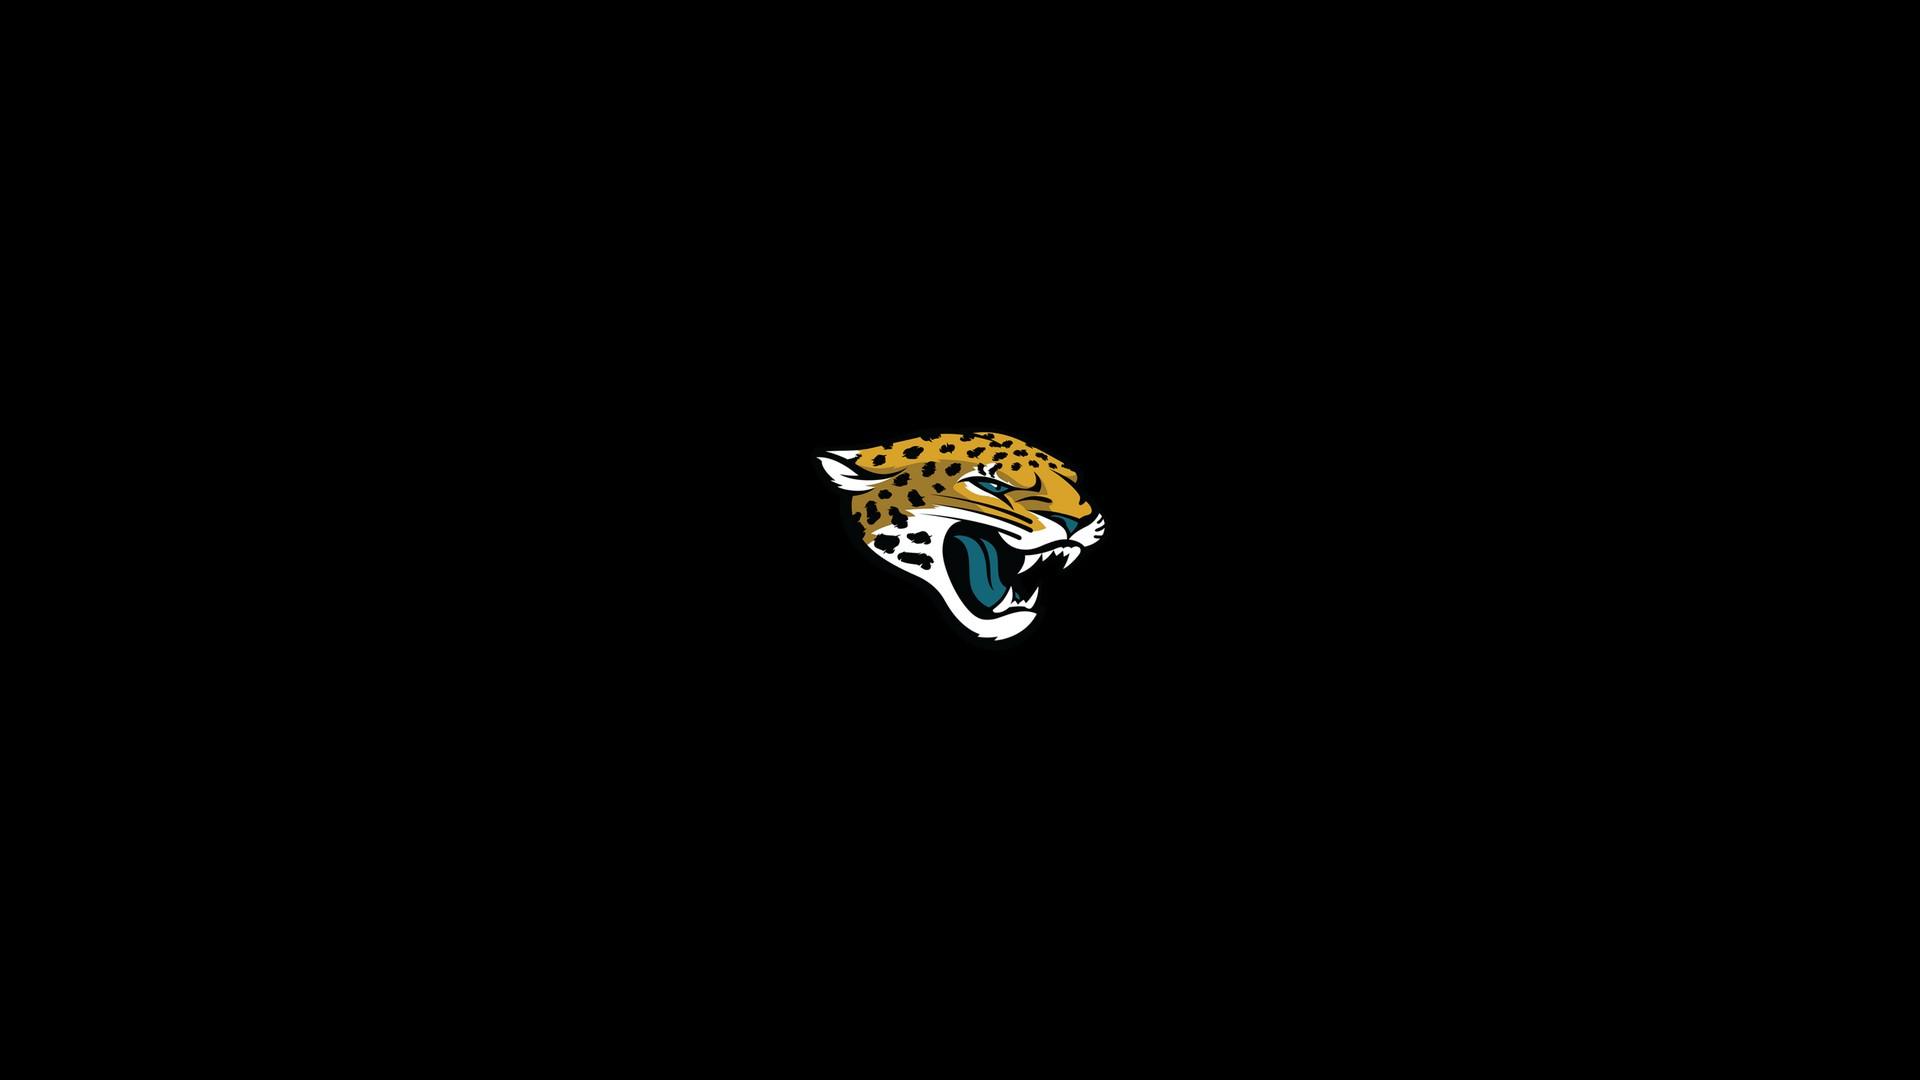 Background Jacksonville Jaguars HD NFL Football